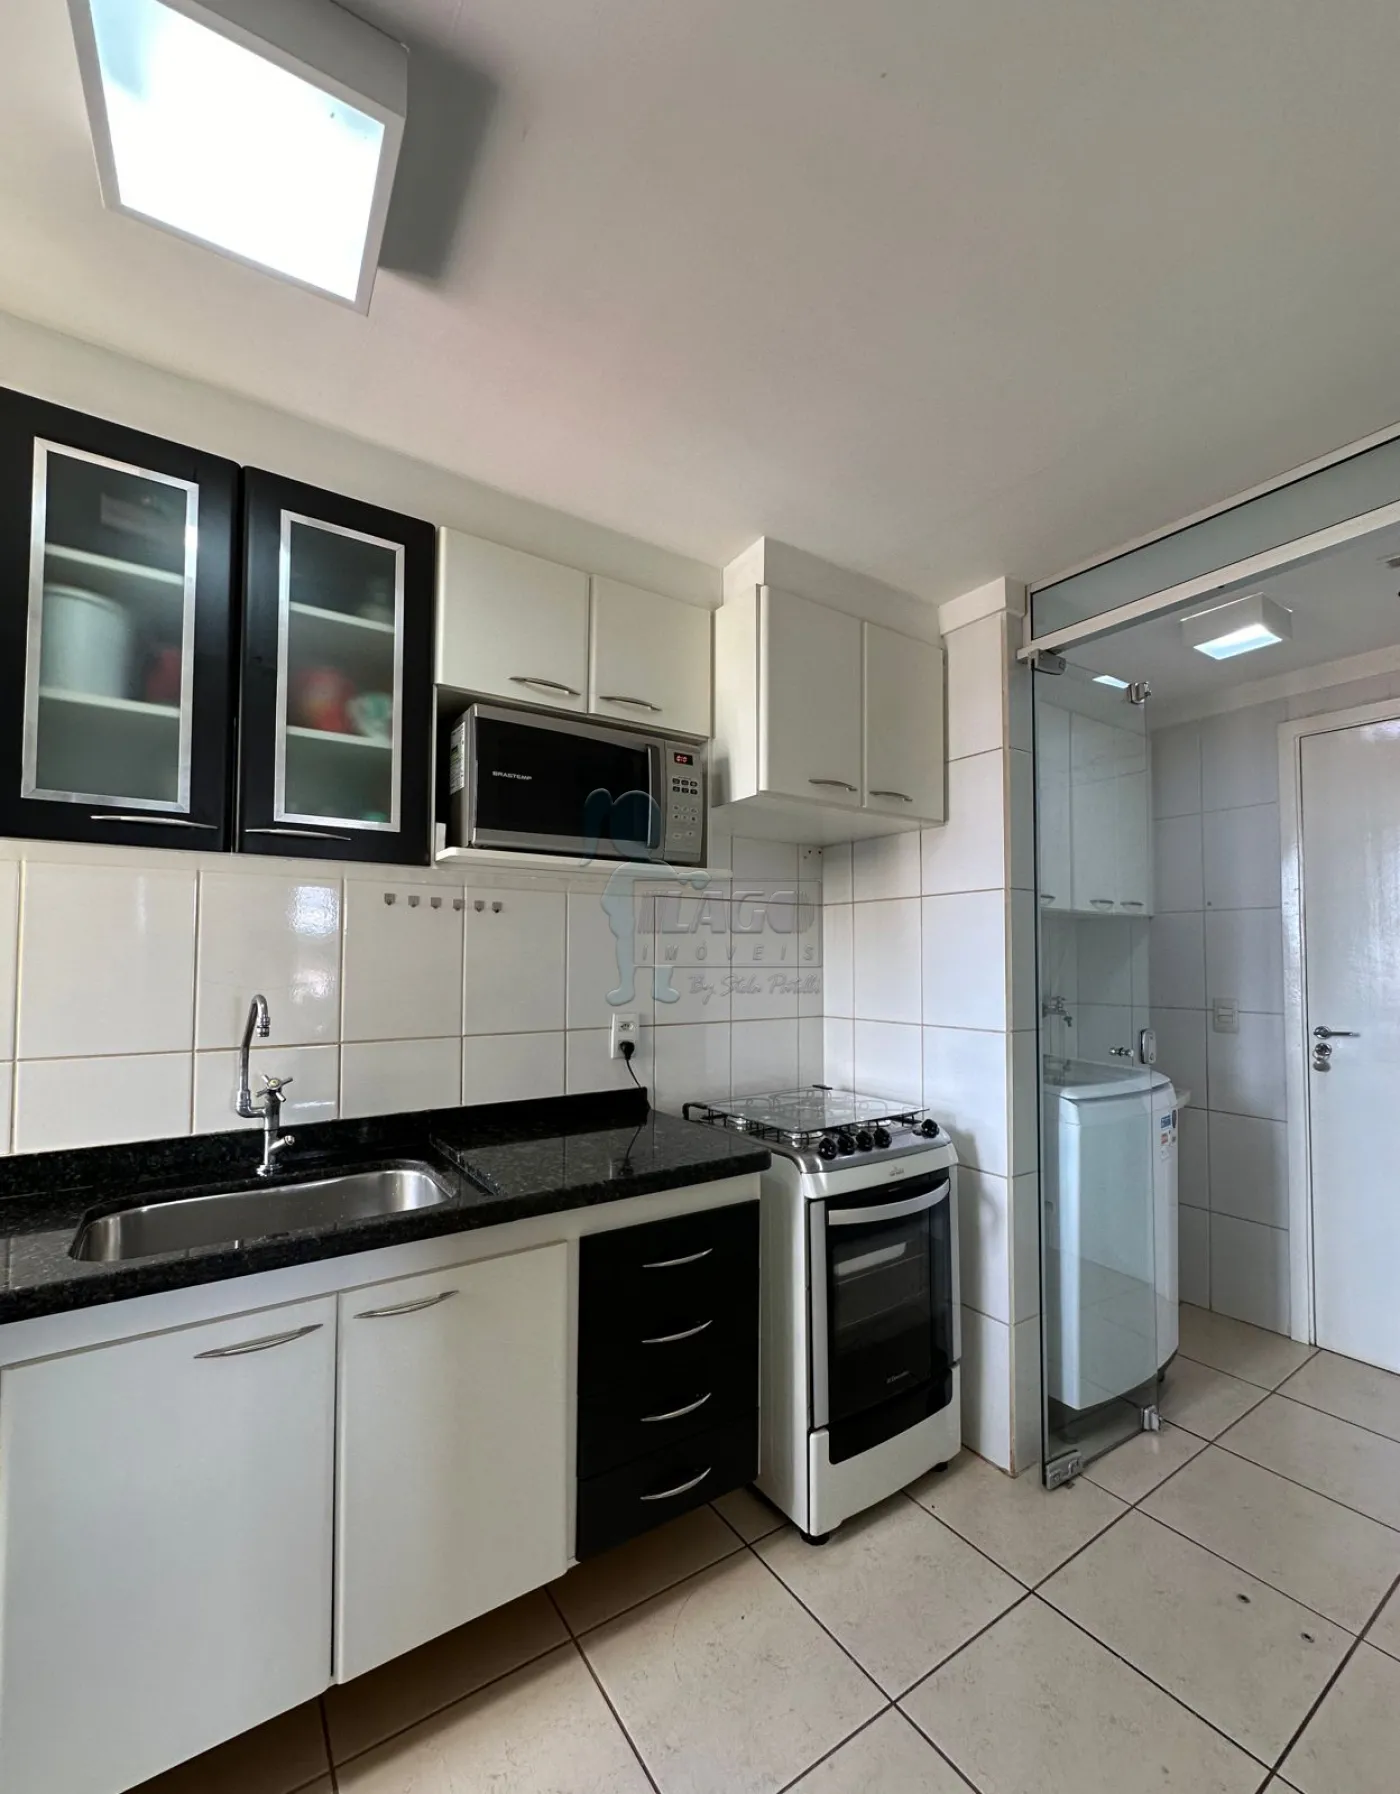 Comprar Apartamento / Duplex em Jaboticabal R$ 650.000,00 - Foto 10